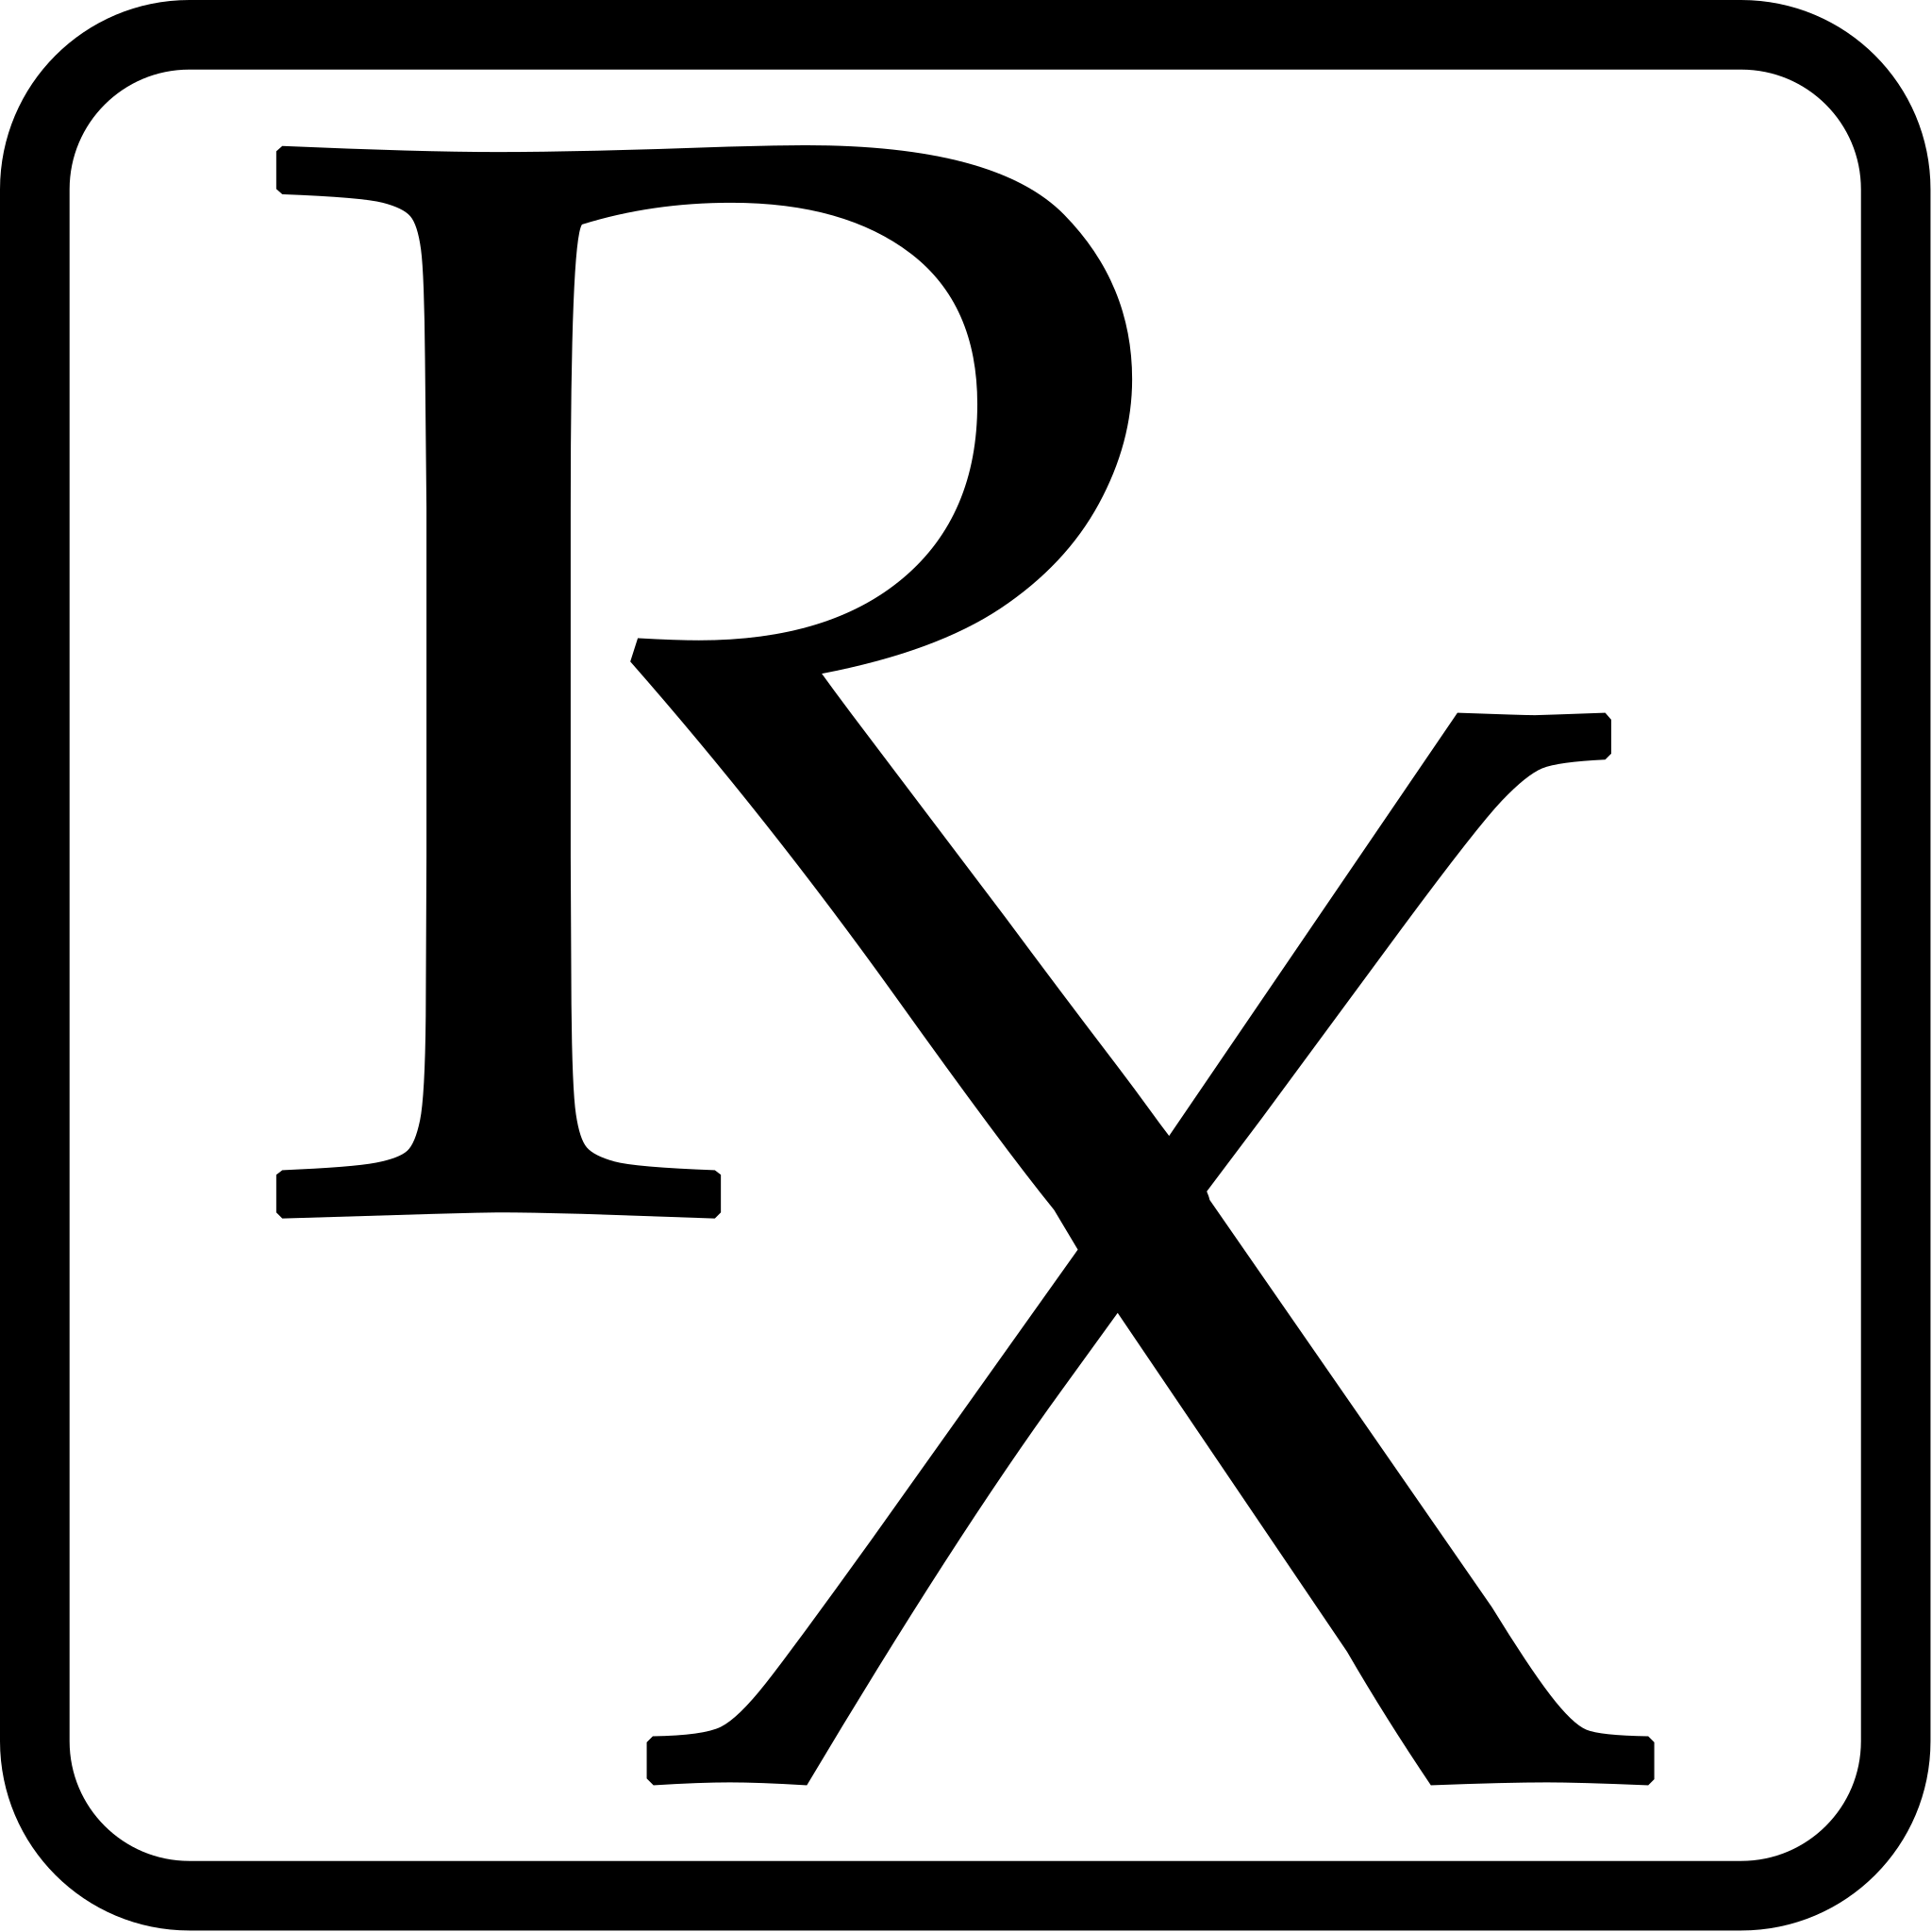 Rx prescription symbol for medical design 7653926 Vector Art at Vecteezy